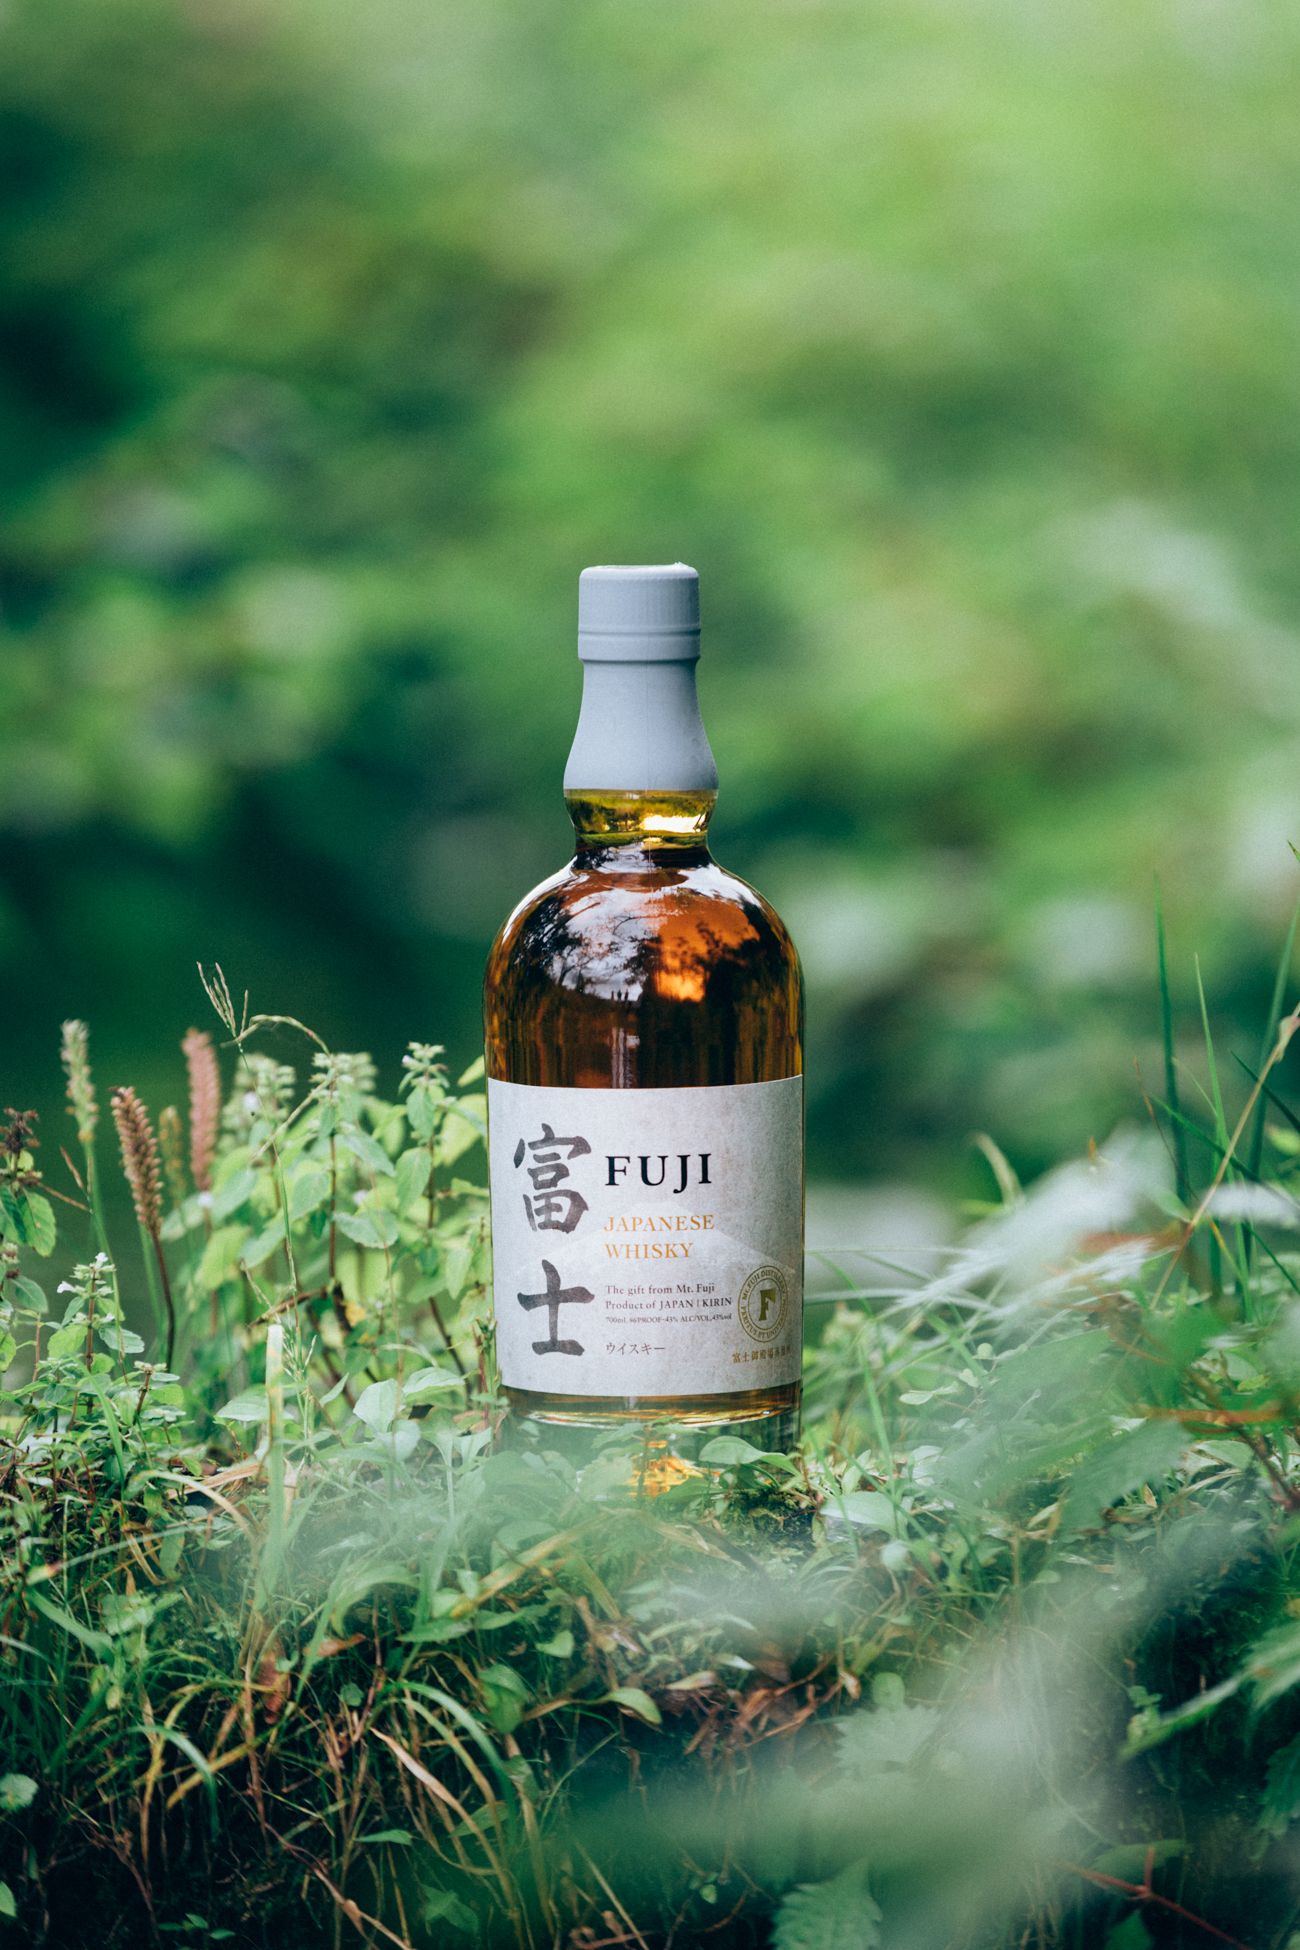 FUJI Whisky Creating New Japanese Whisky Category